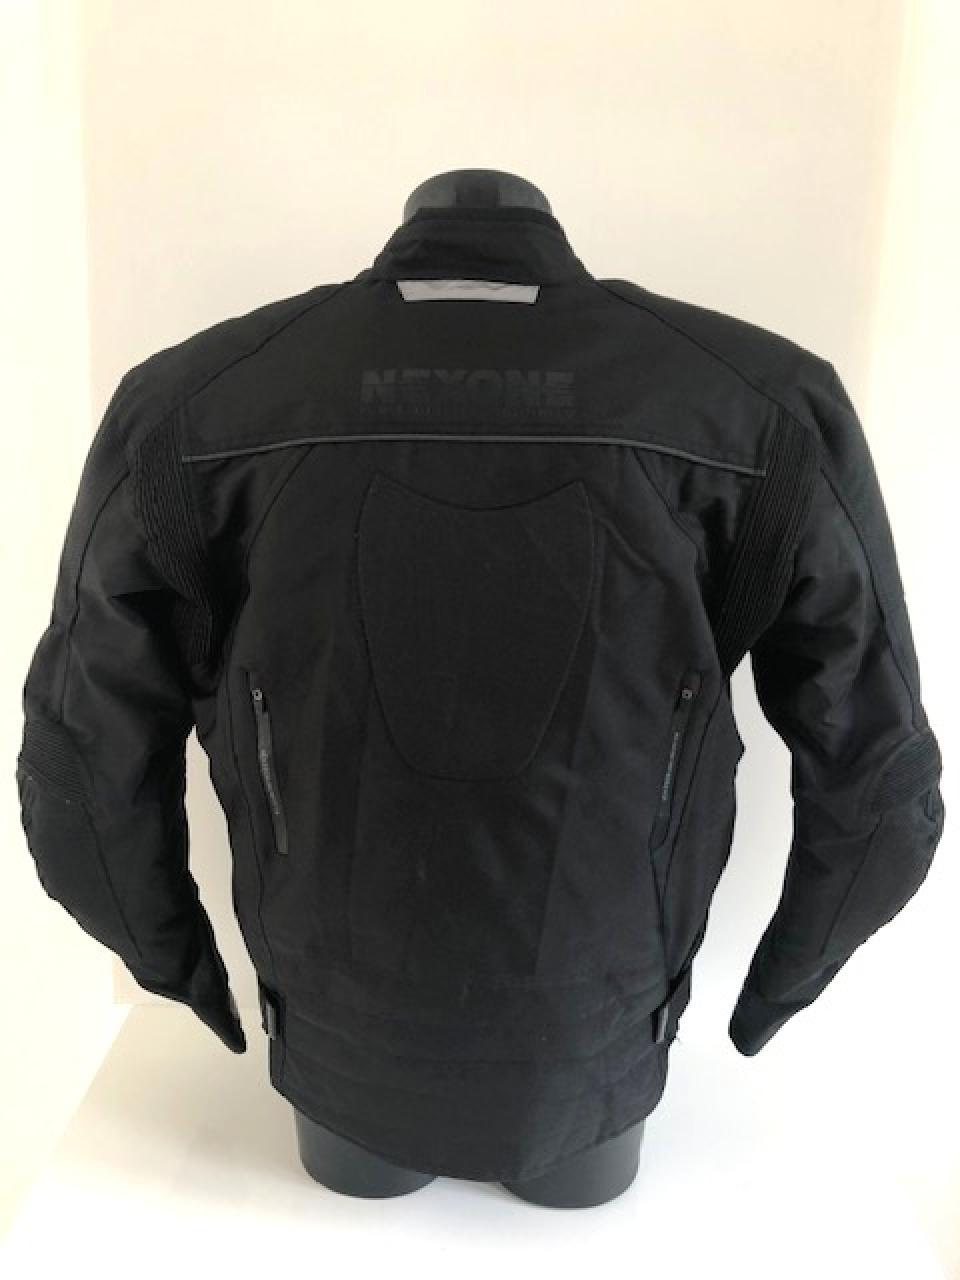 Blouson textile pour moto Nexone Giovanni noir taille XL dorsale homologué CE Neuf